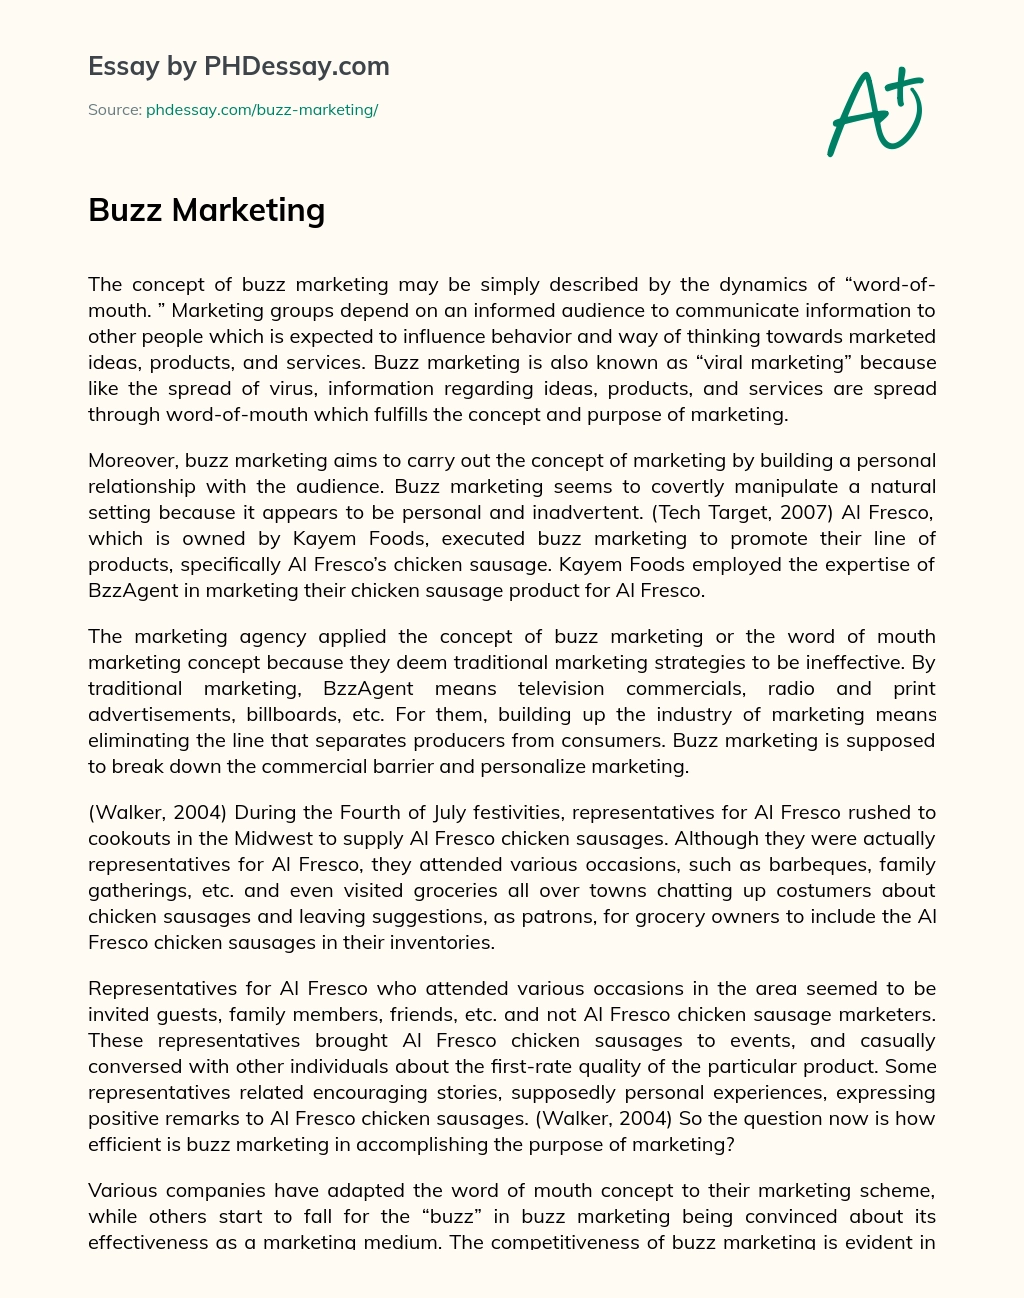 Buzz Marketing essay